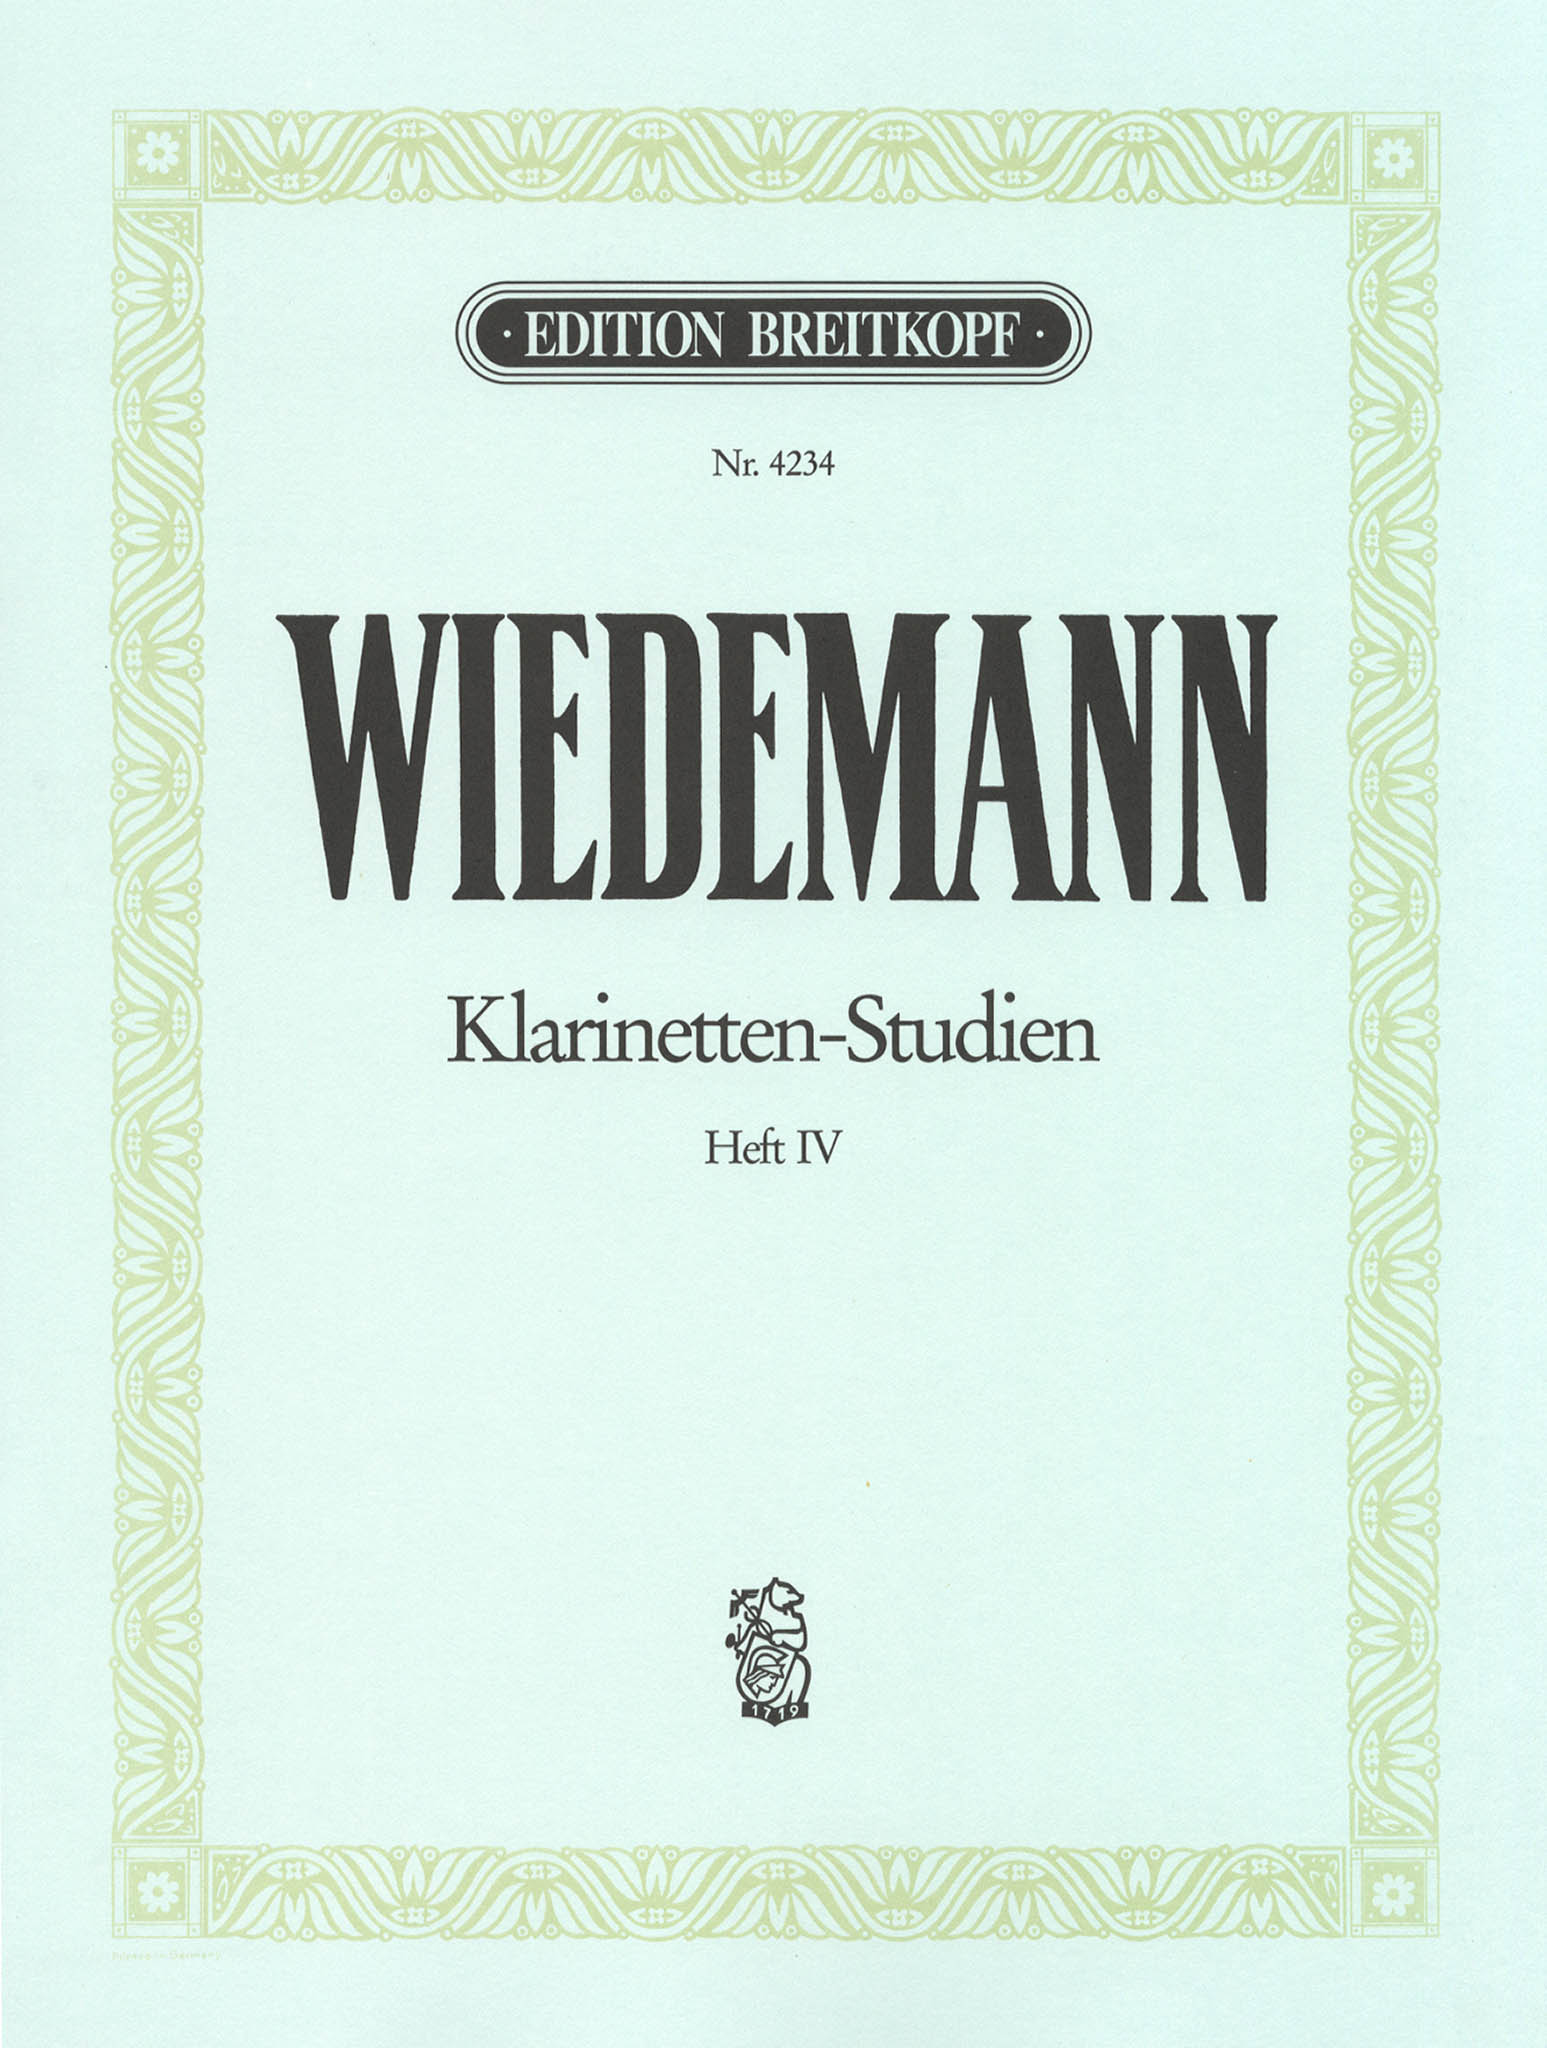 Wiedemann Clarinet Studies, Book 4 cover